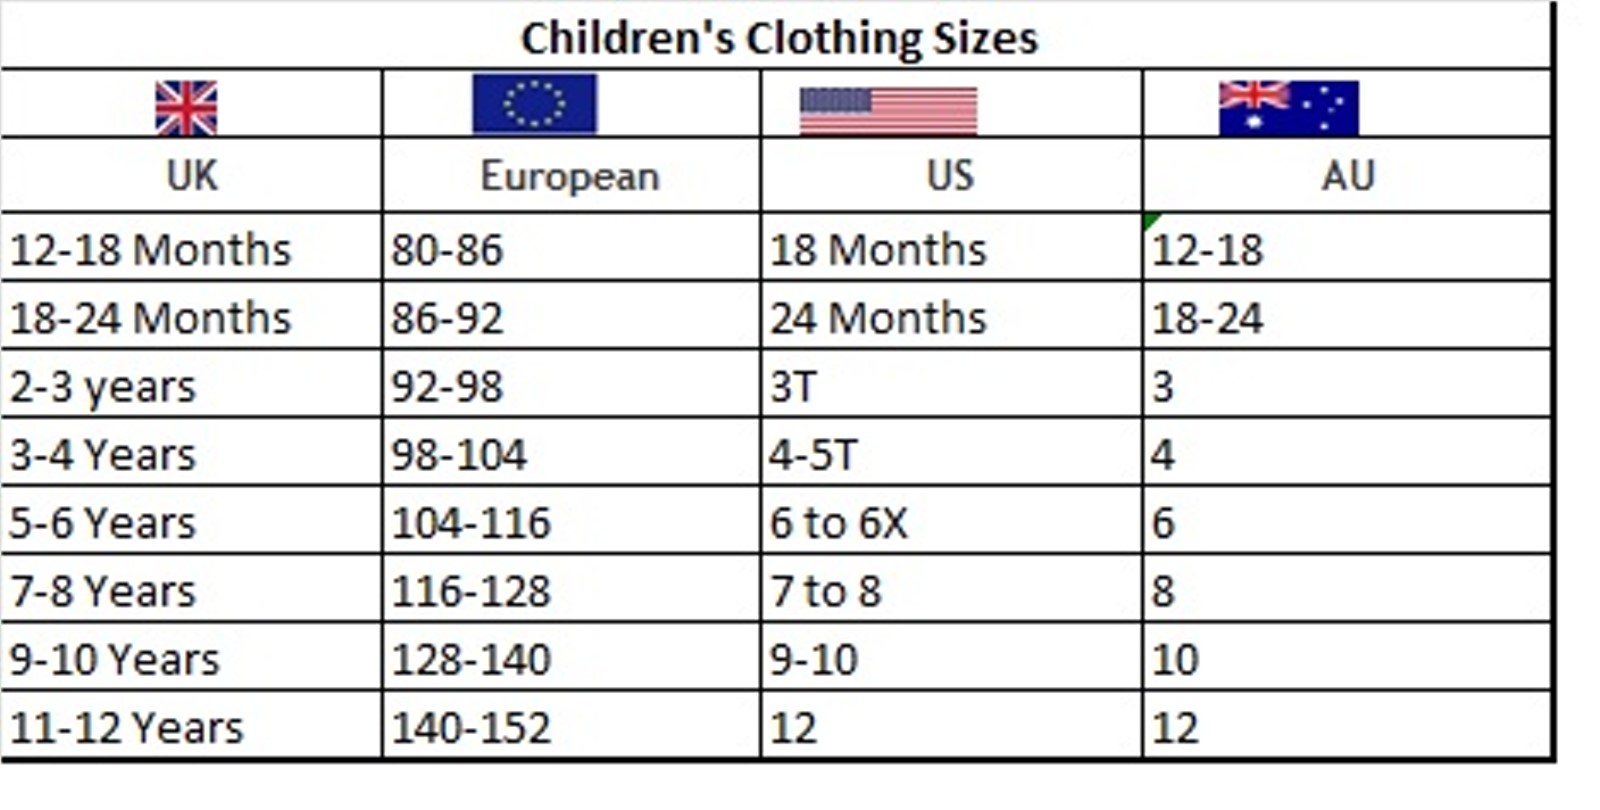 International Children's Clothing Size.jpg  by Thingimijigs